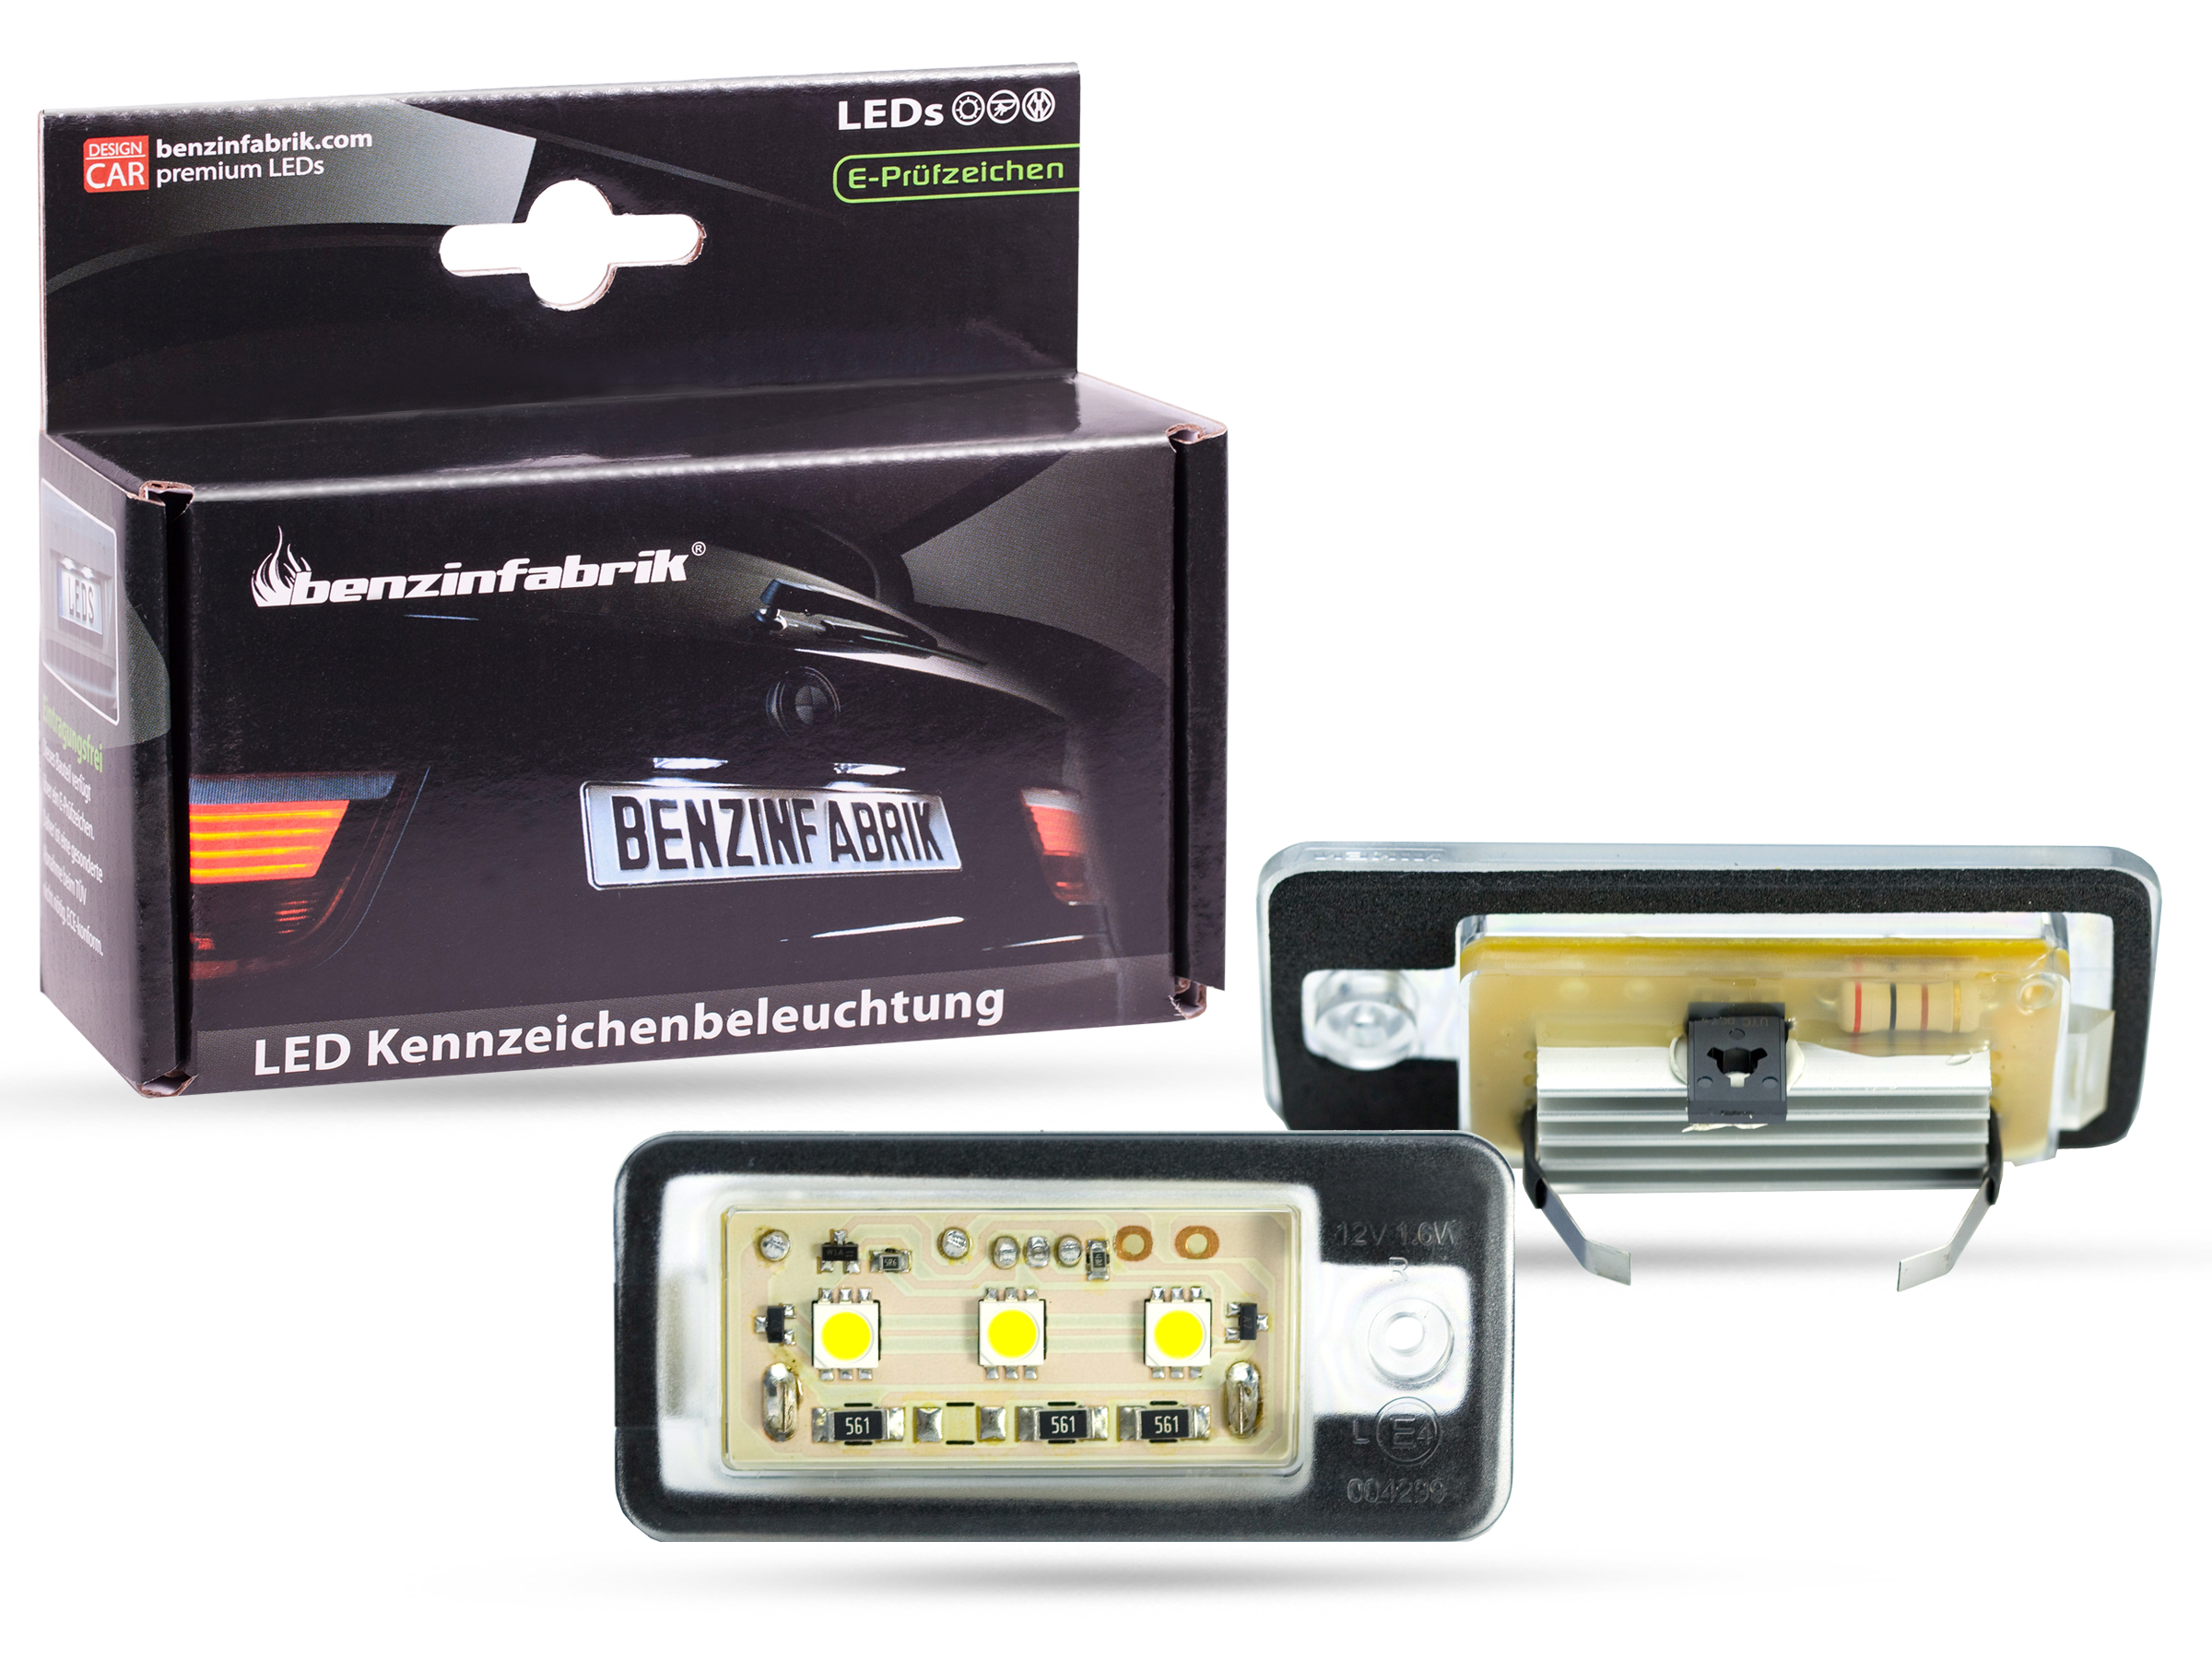 SMD LED Kennzeichenbeleuchtung Audi Cabriolet Typ 8G 1991-2000 E-Prüfzeichen